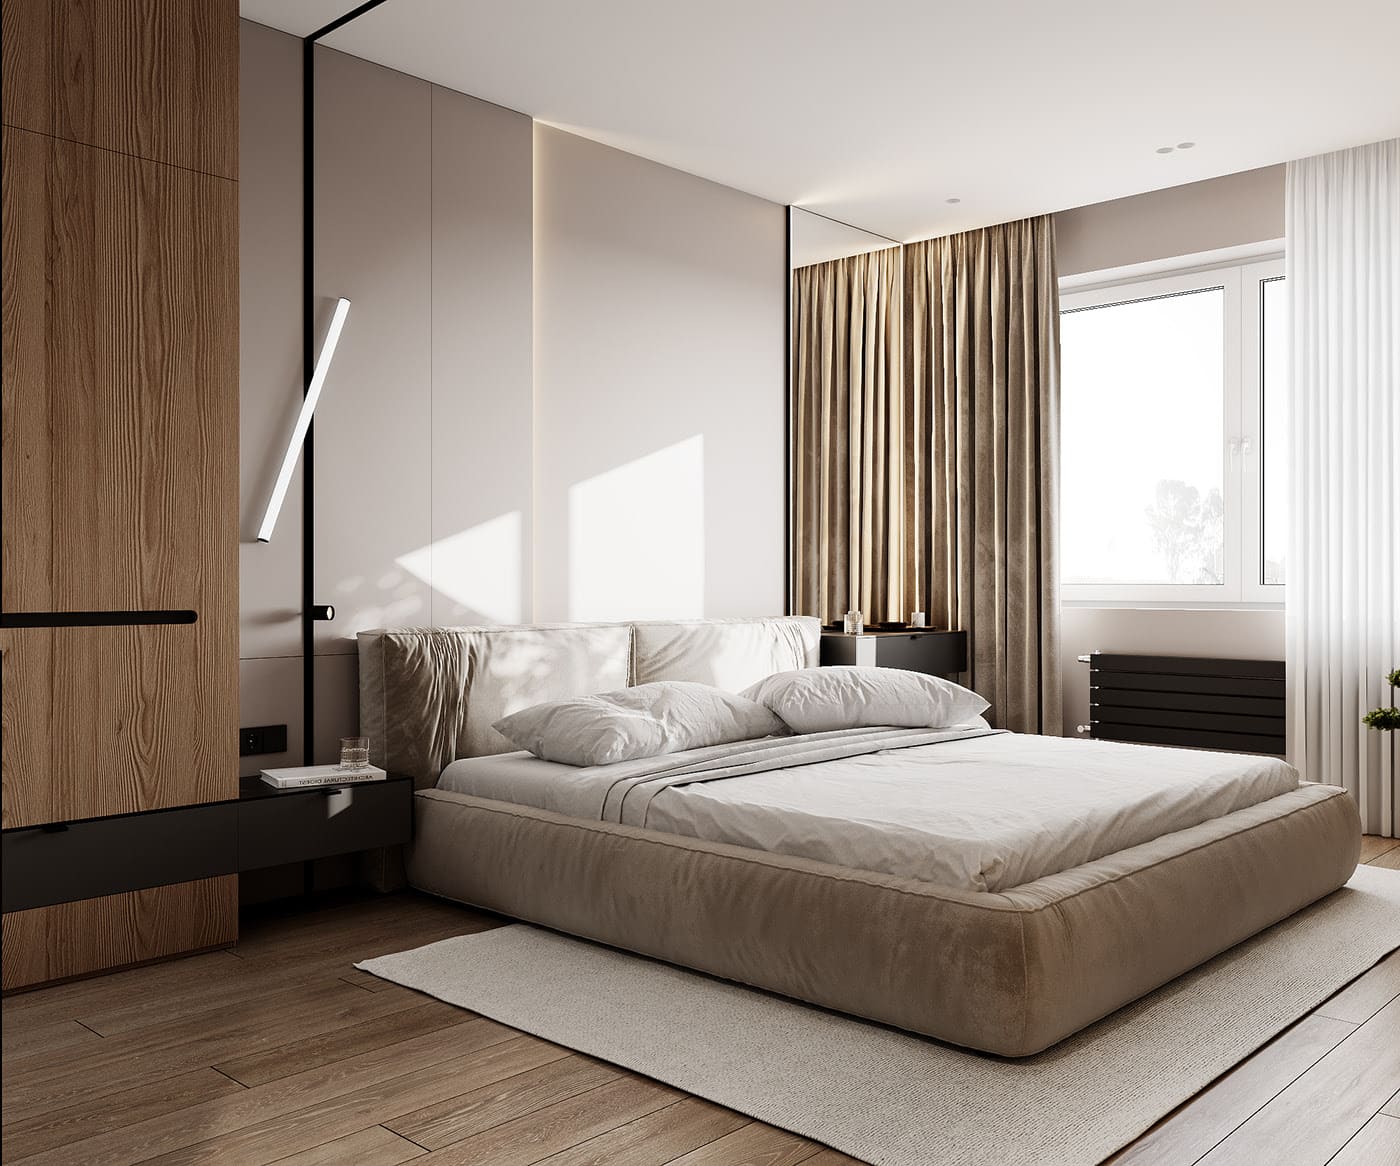 Лаконичная квартира в стиле минимализм, спальня, фото 24